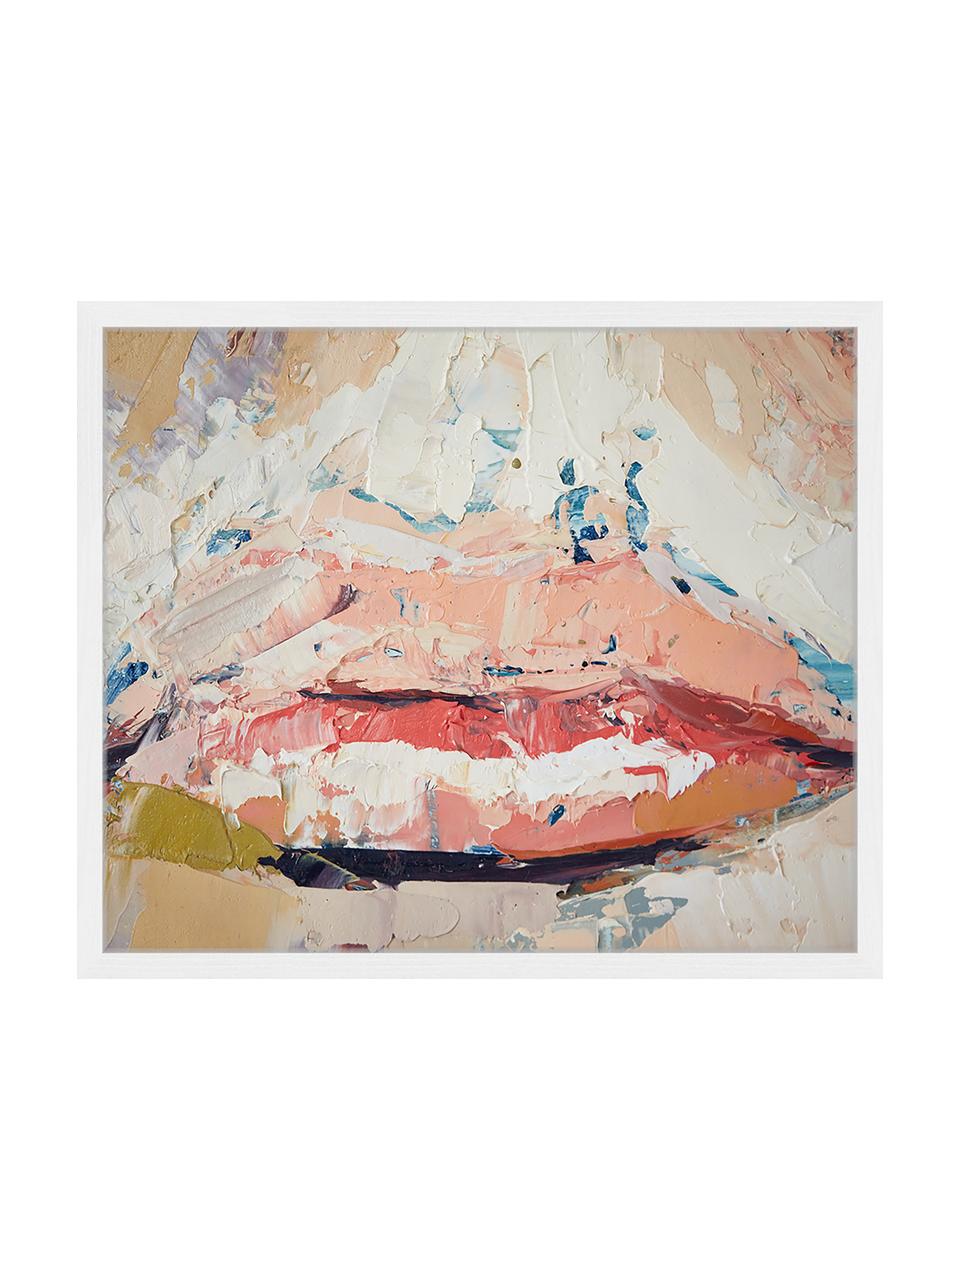 Stampa digitale incorniciata Kiss Me, Immagine: stampa digitale su carta,, Cornice: legno verniciato, Multicolore, Larg. 63 x Alt. 53 cm